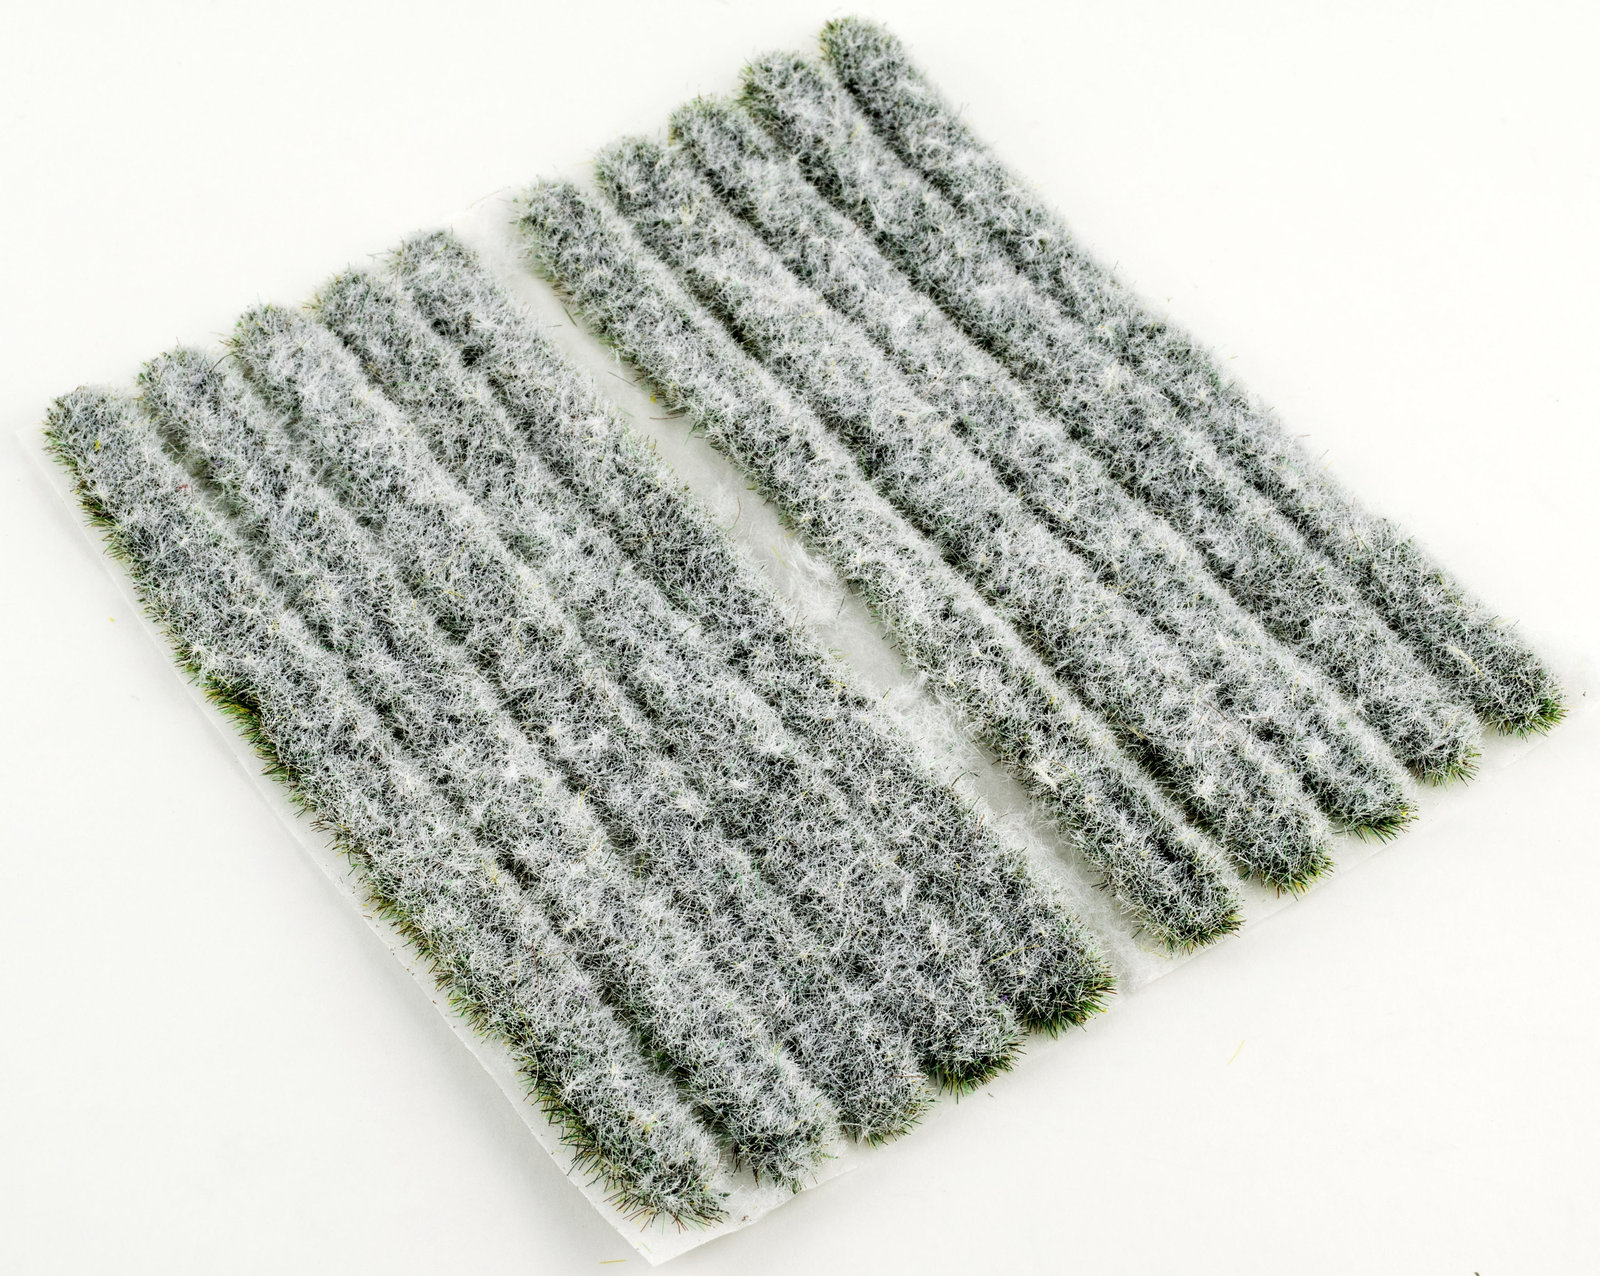 4mm Iced Winter Static Grass Strips x 10 by WWS - Model Railway Diorama Scenery